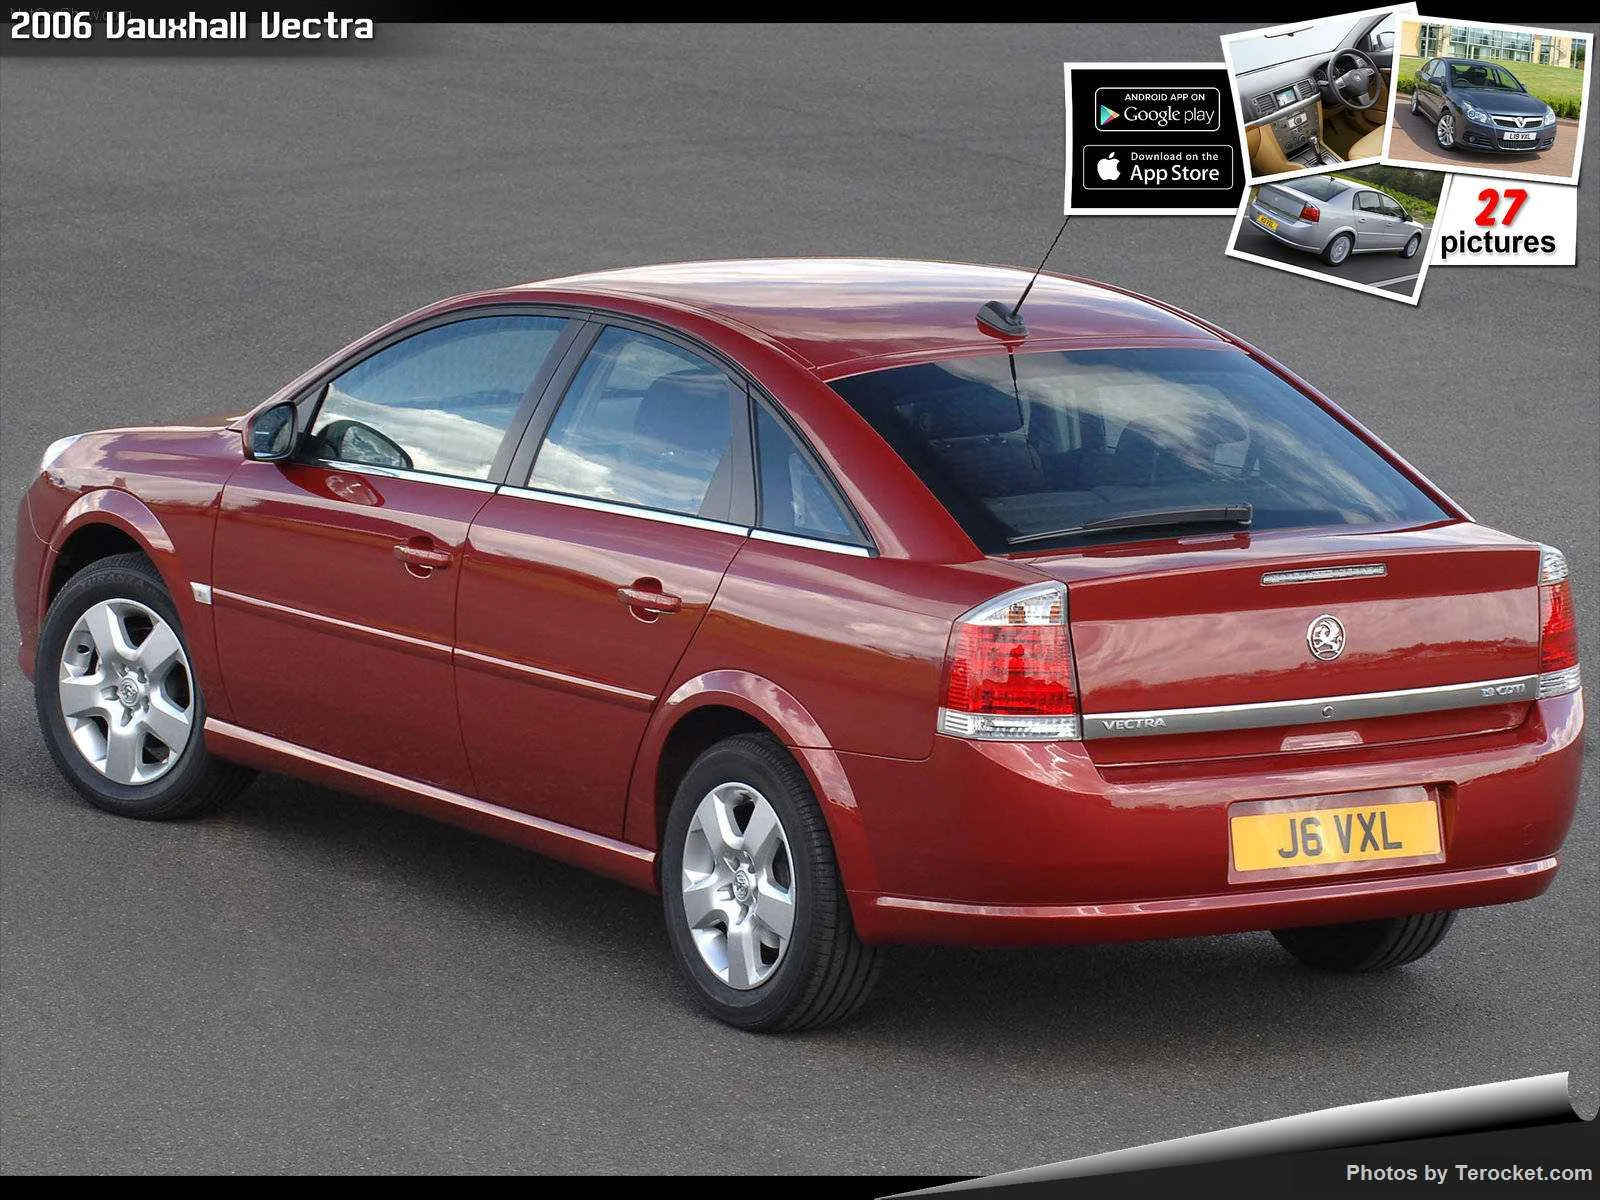 Hình ảnh xe ô tô Vauxhall Vectra 2006 & nội ngoại thất